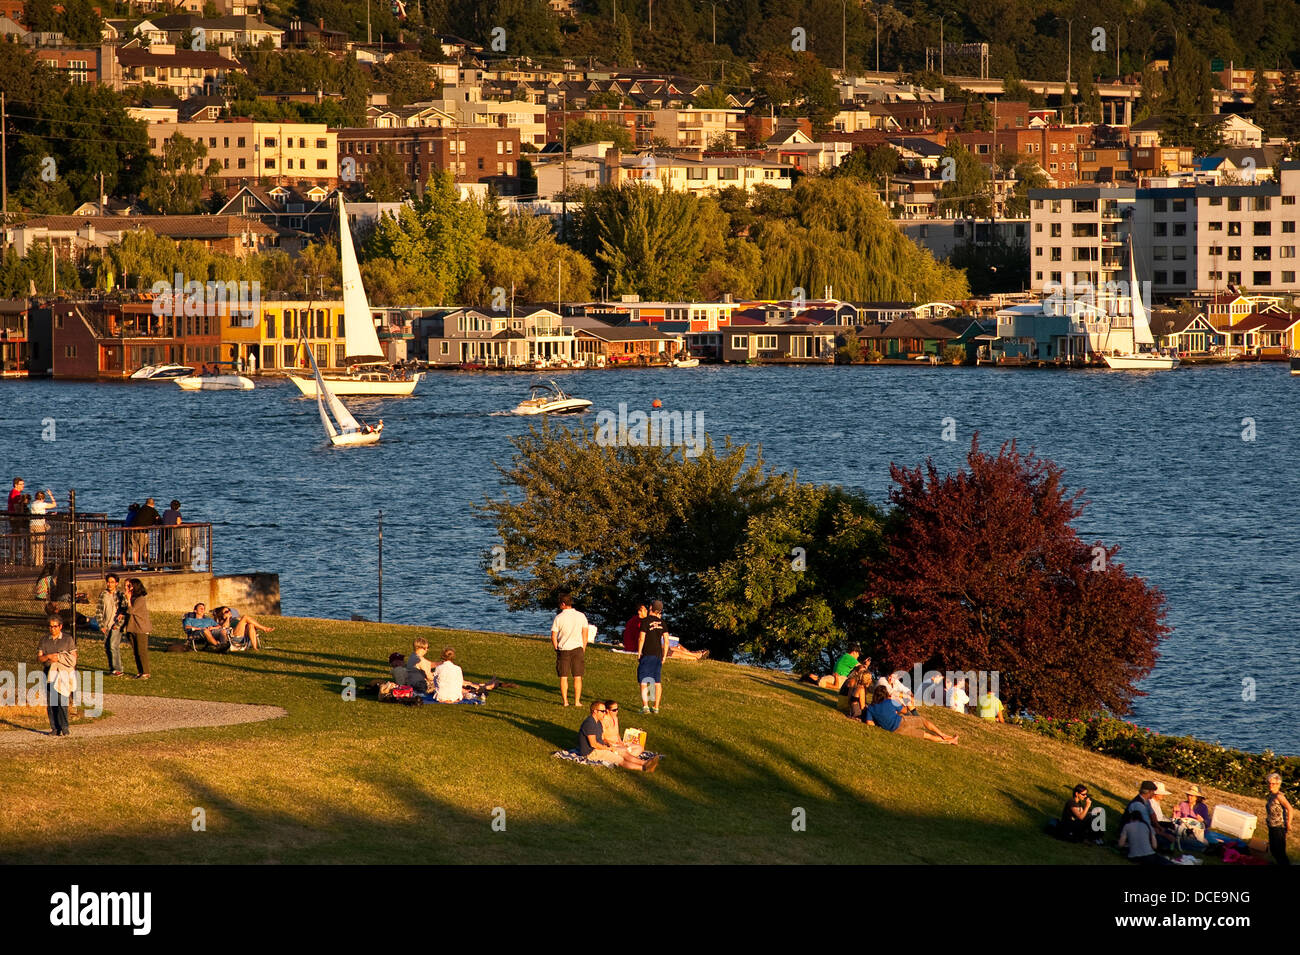 Immagine retrò di picnic al gas Works Park con famiglie e amici che guardano una gara in barca a vela sul lago Union Seattle Washington state Foto Stock